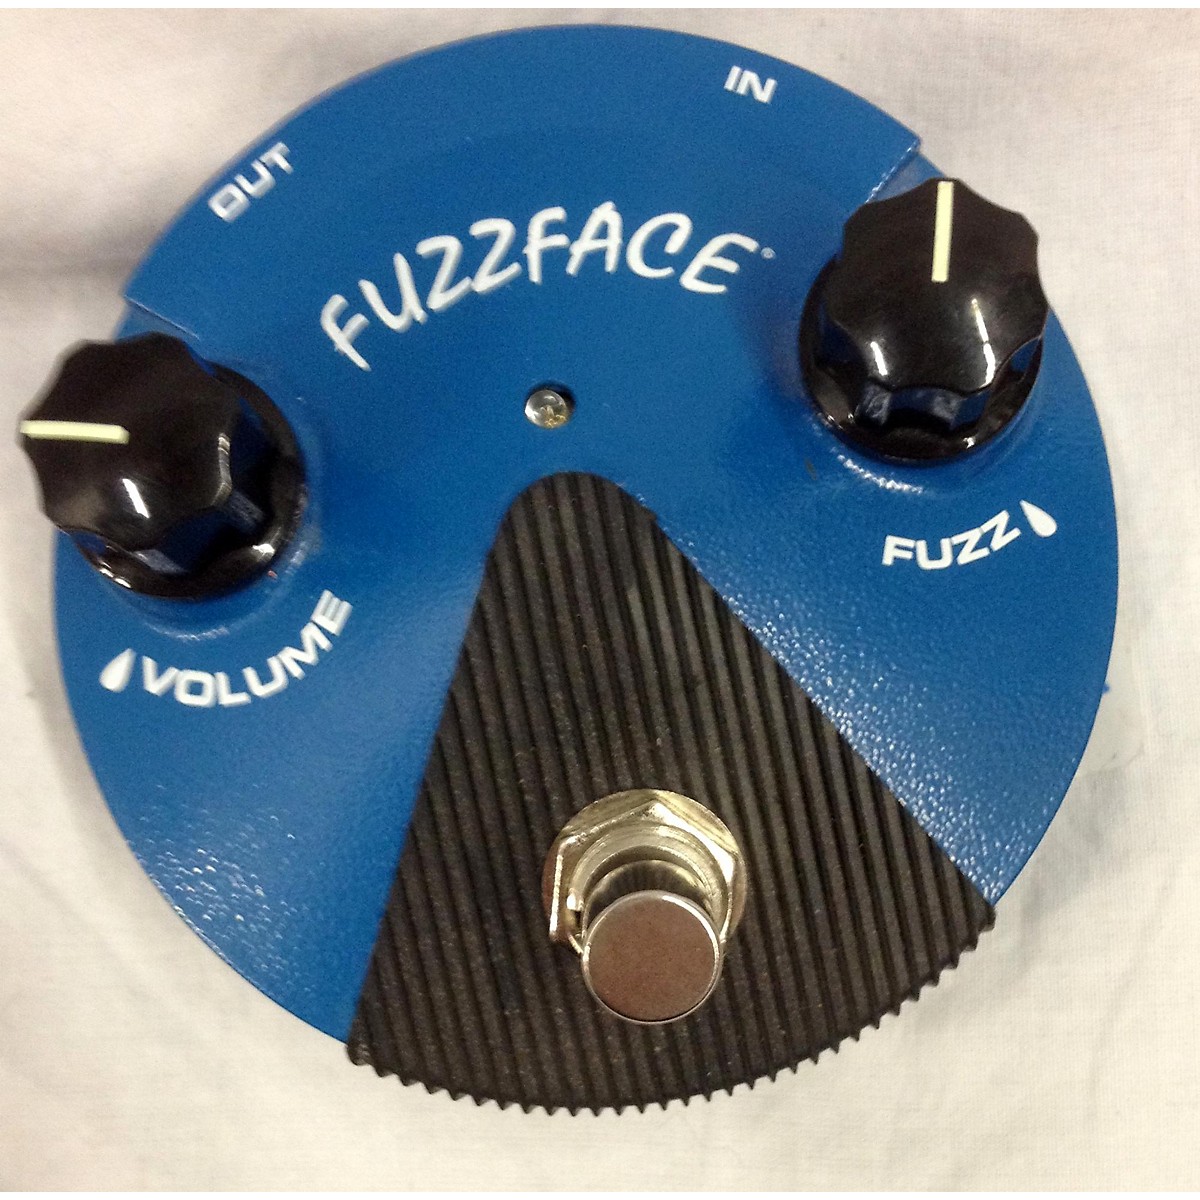 dunlop fuzz face pedal